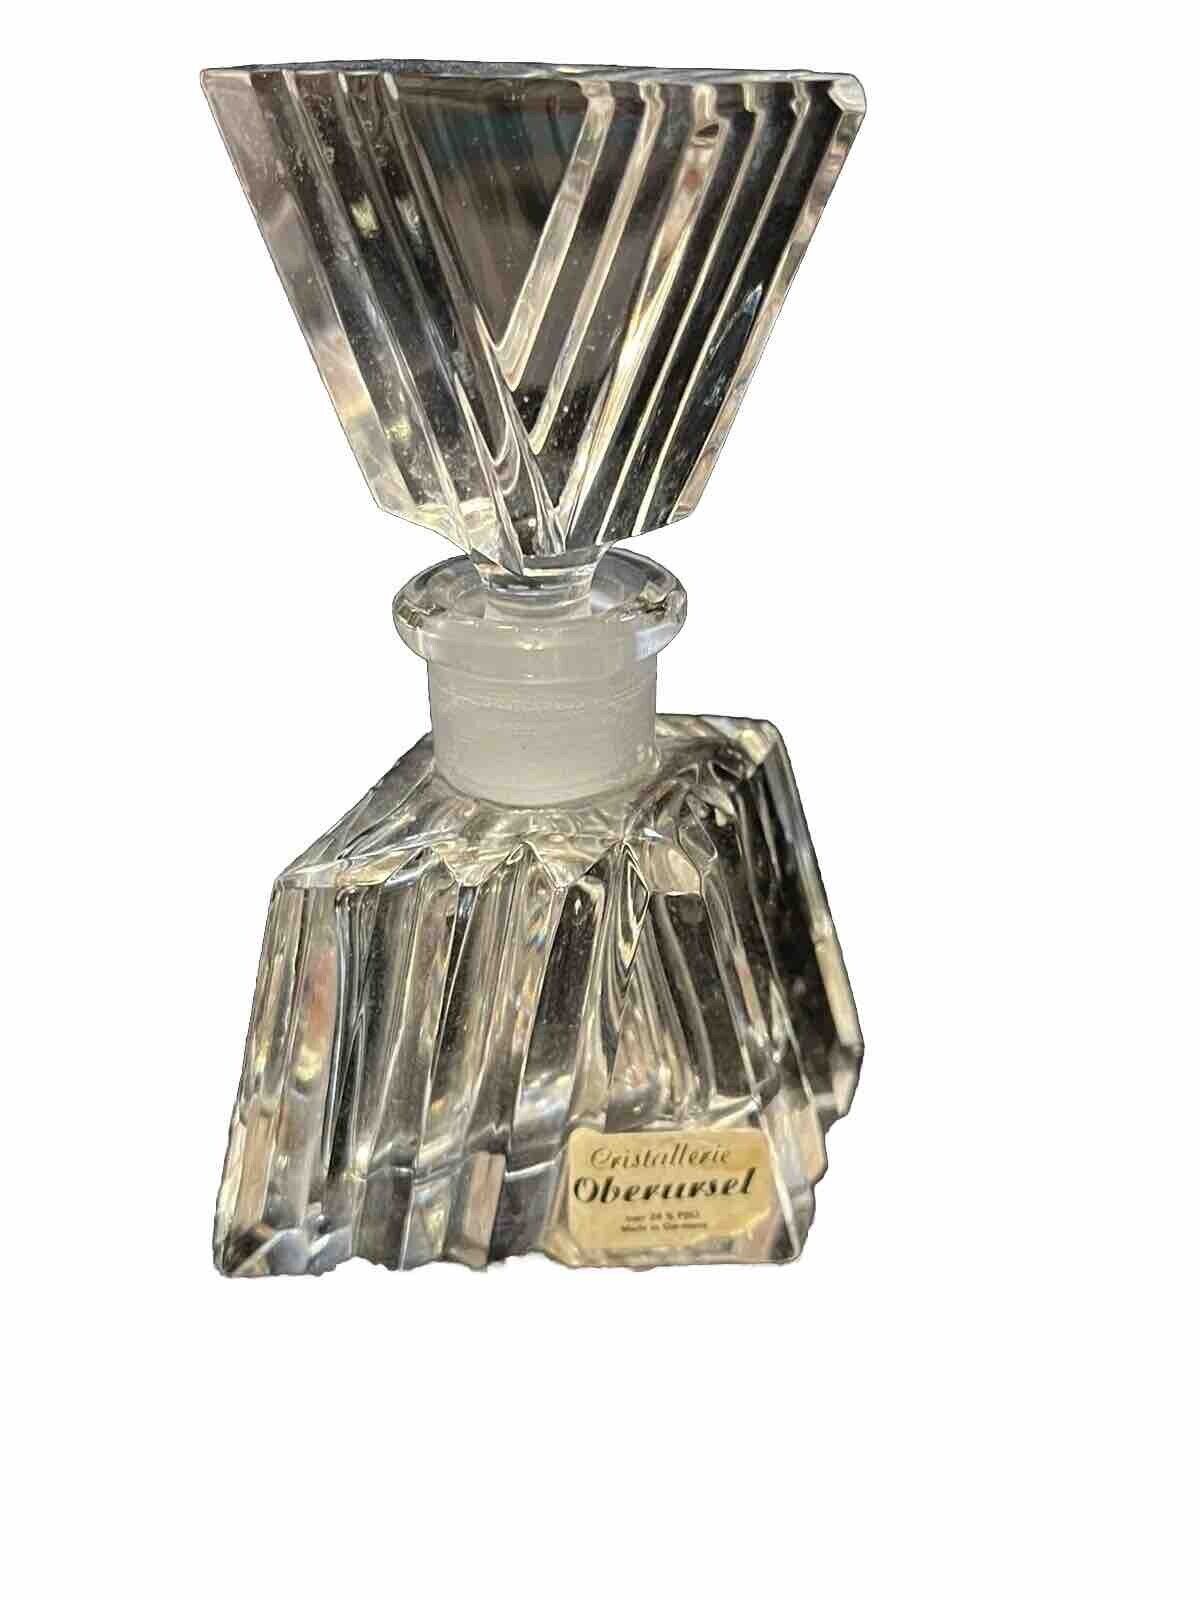 Cristallerie Oberursel Lead Cut Crystal Perfume Bottle Germany